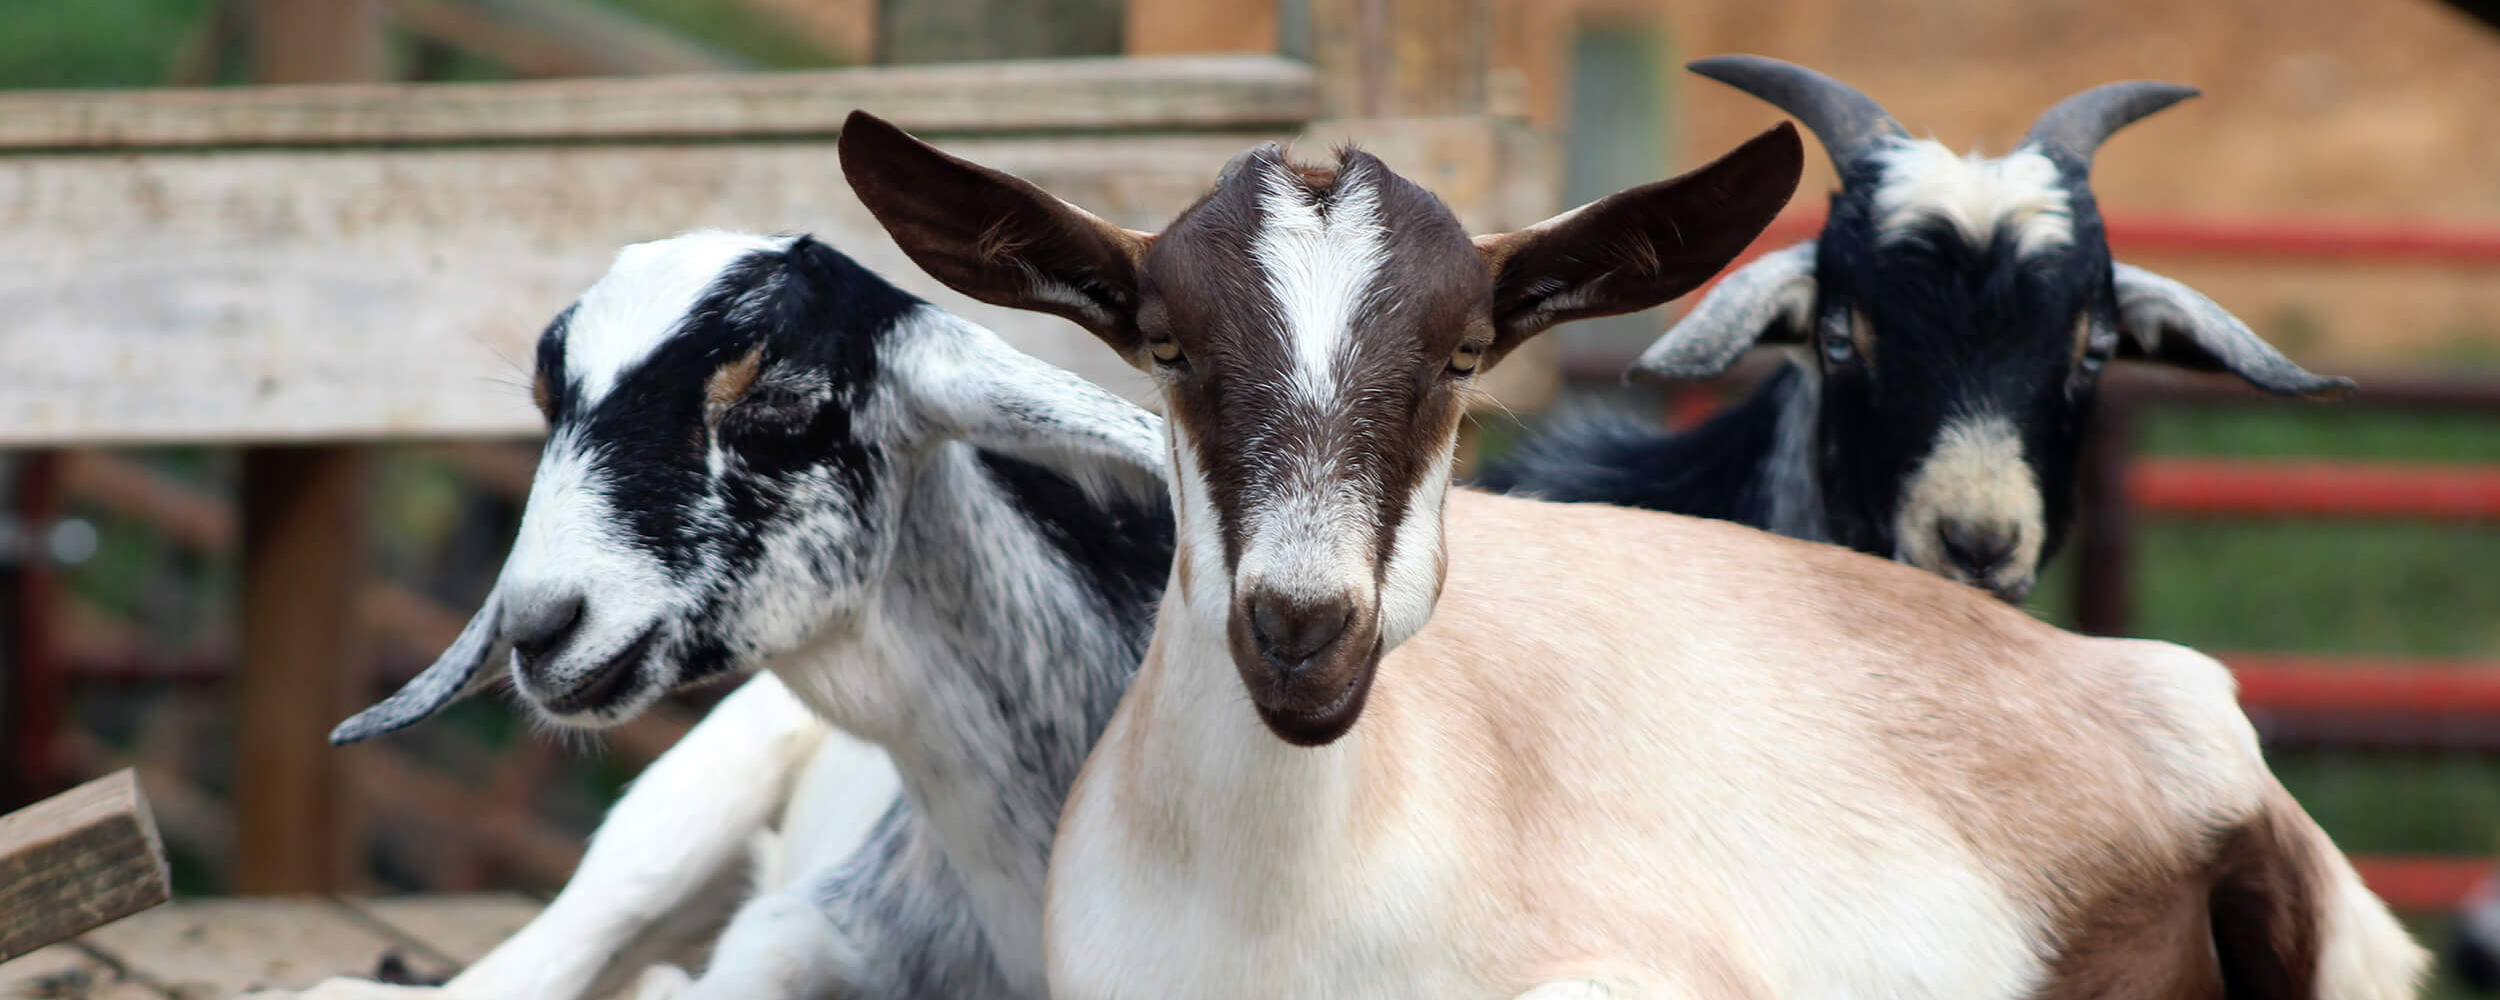 Goat Family Farm Seventh slide